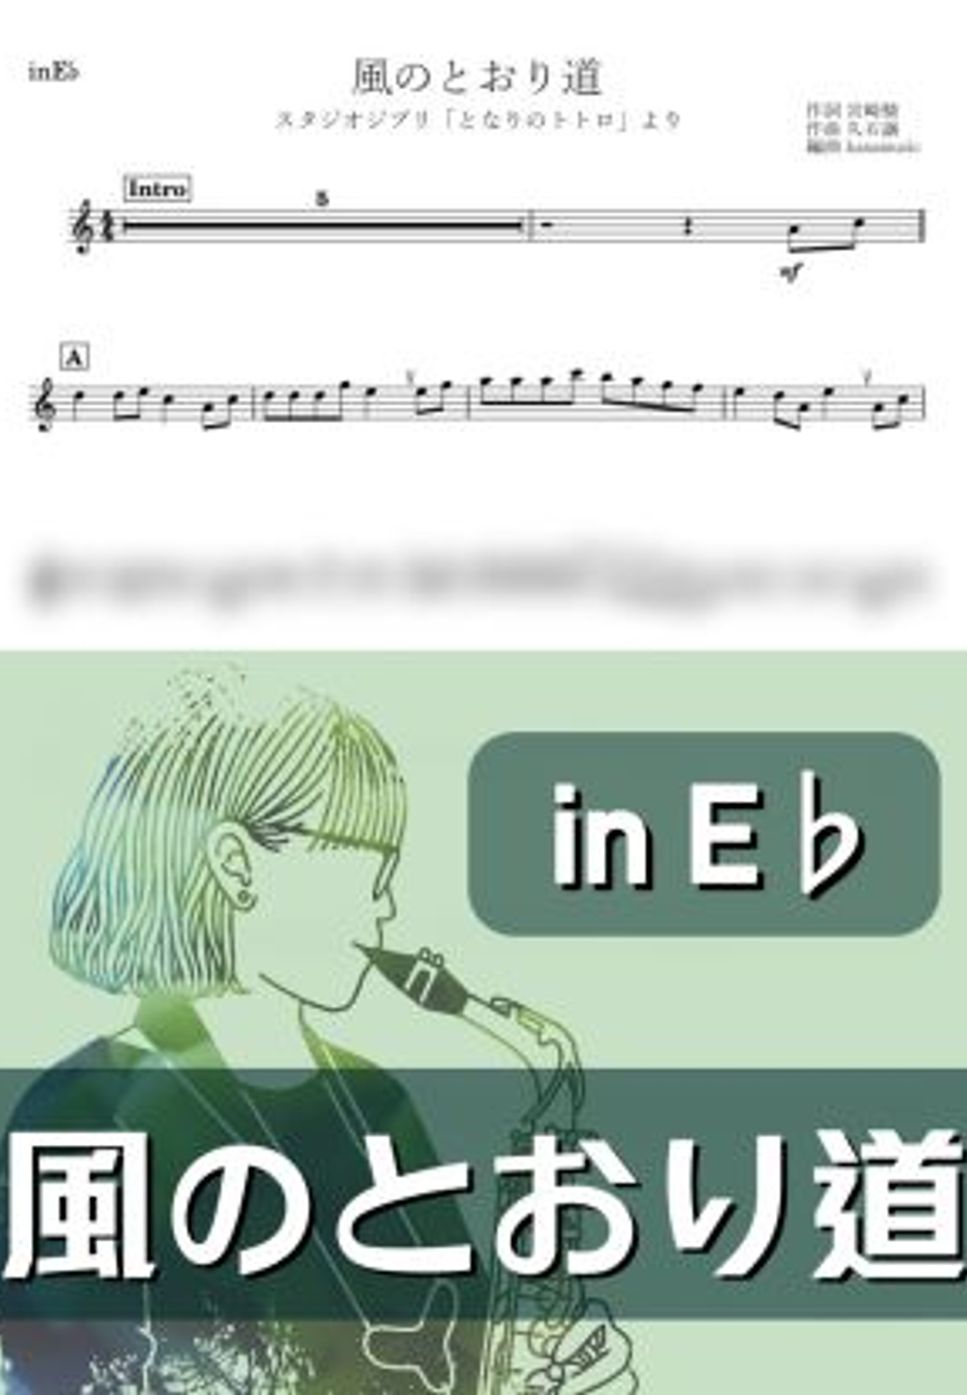 となりのトトロ - 風のとおり道 (E♭) by kanamusic